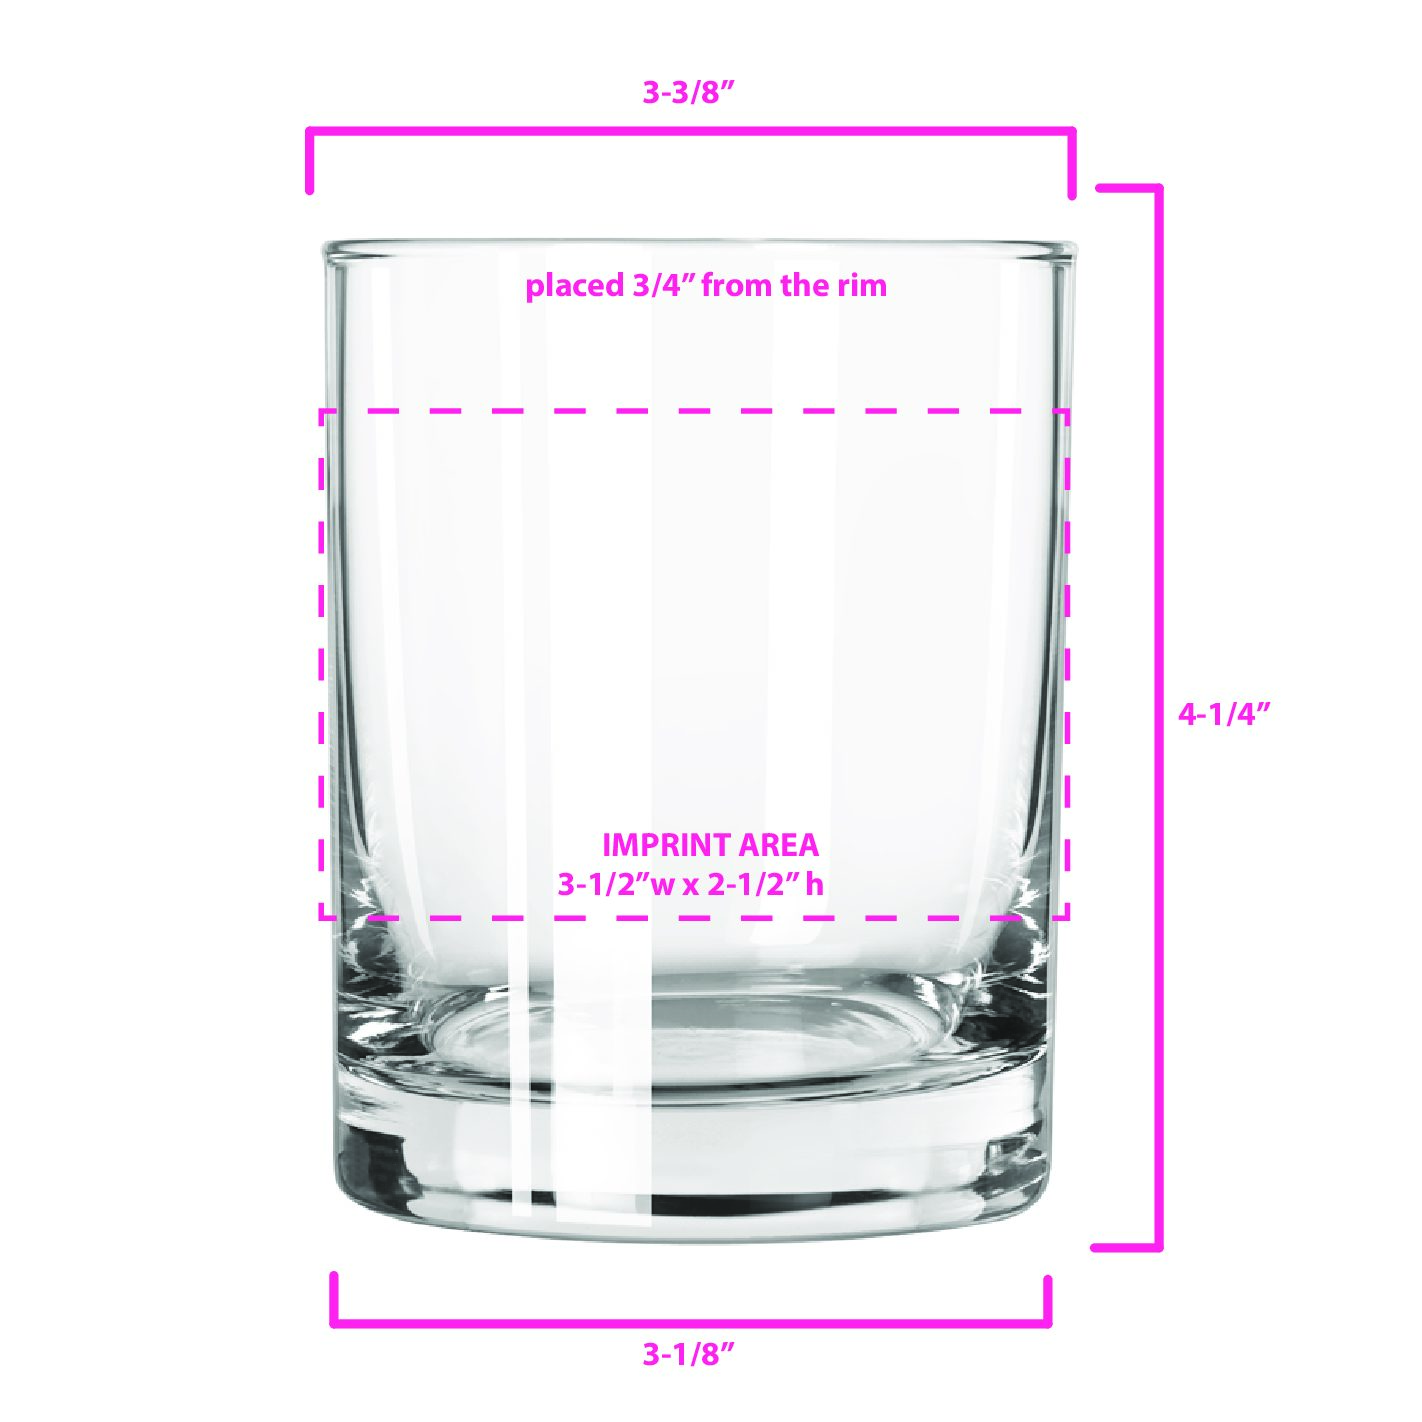 14oz Libbey/Arc Clear Glass, Size: One Size